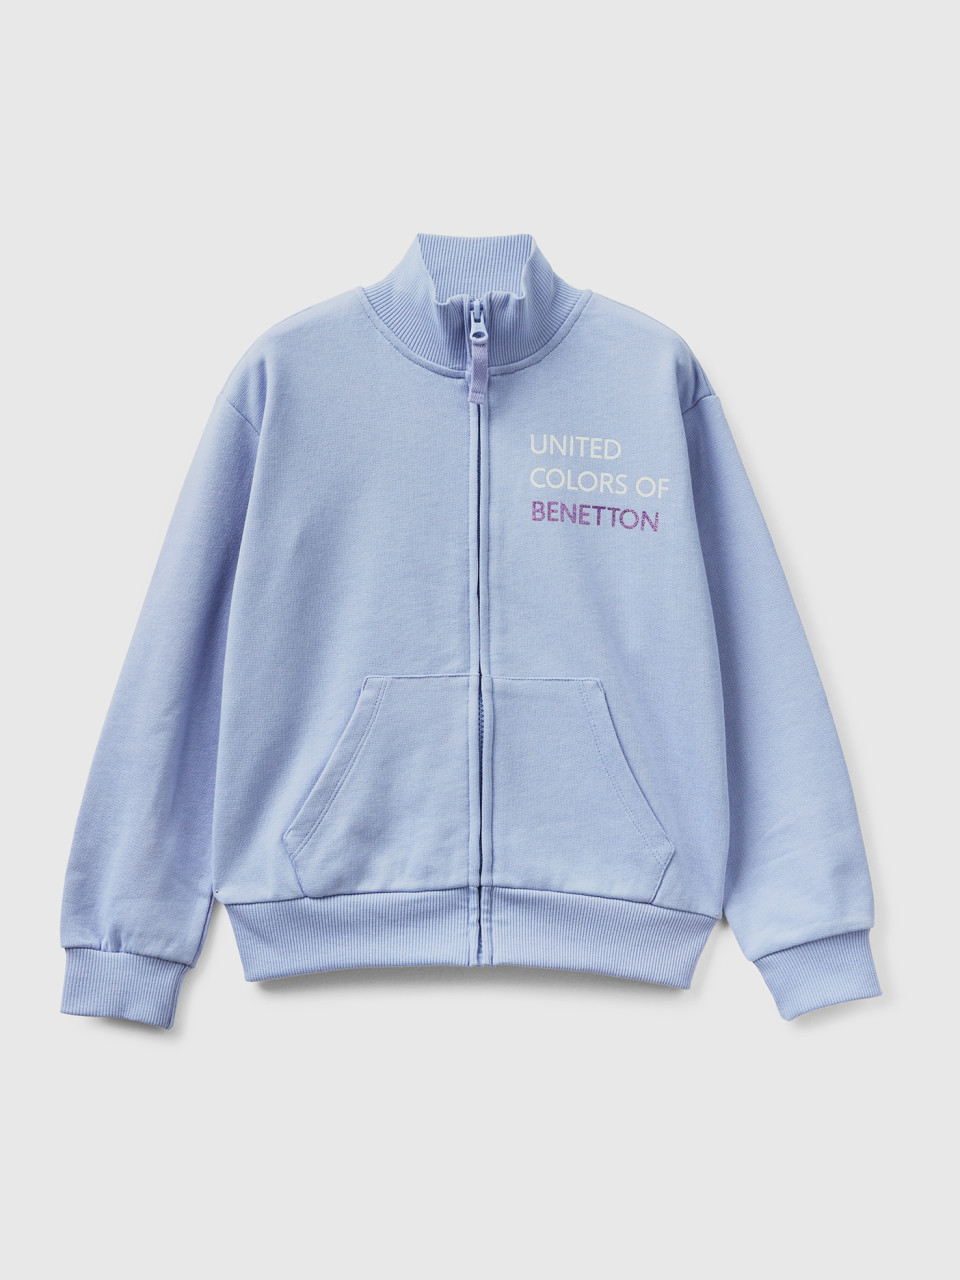 Benetton, Sweatshirt Mit Reißverschluss Und Kragen, Flieder, female